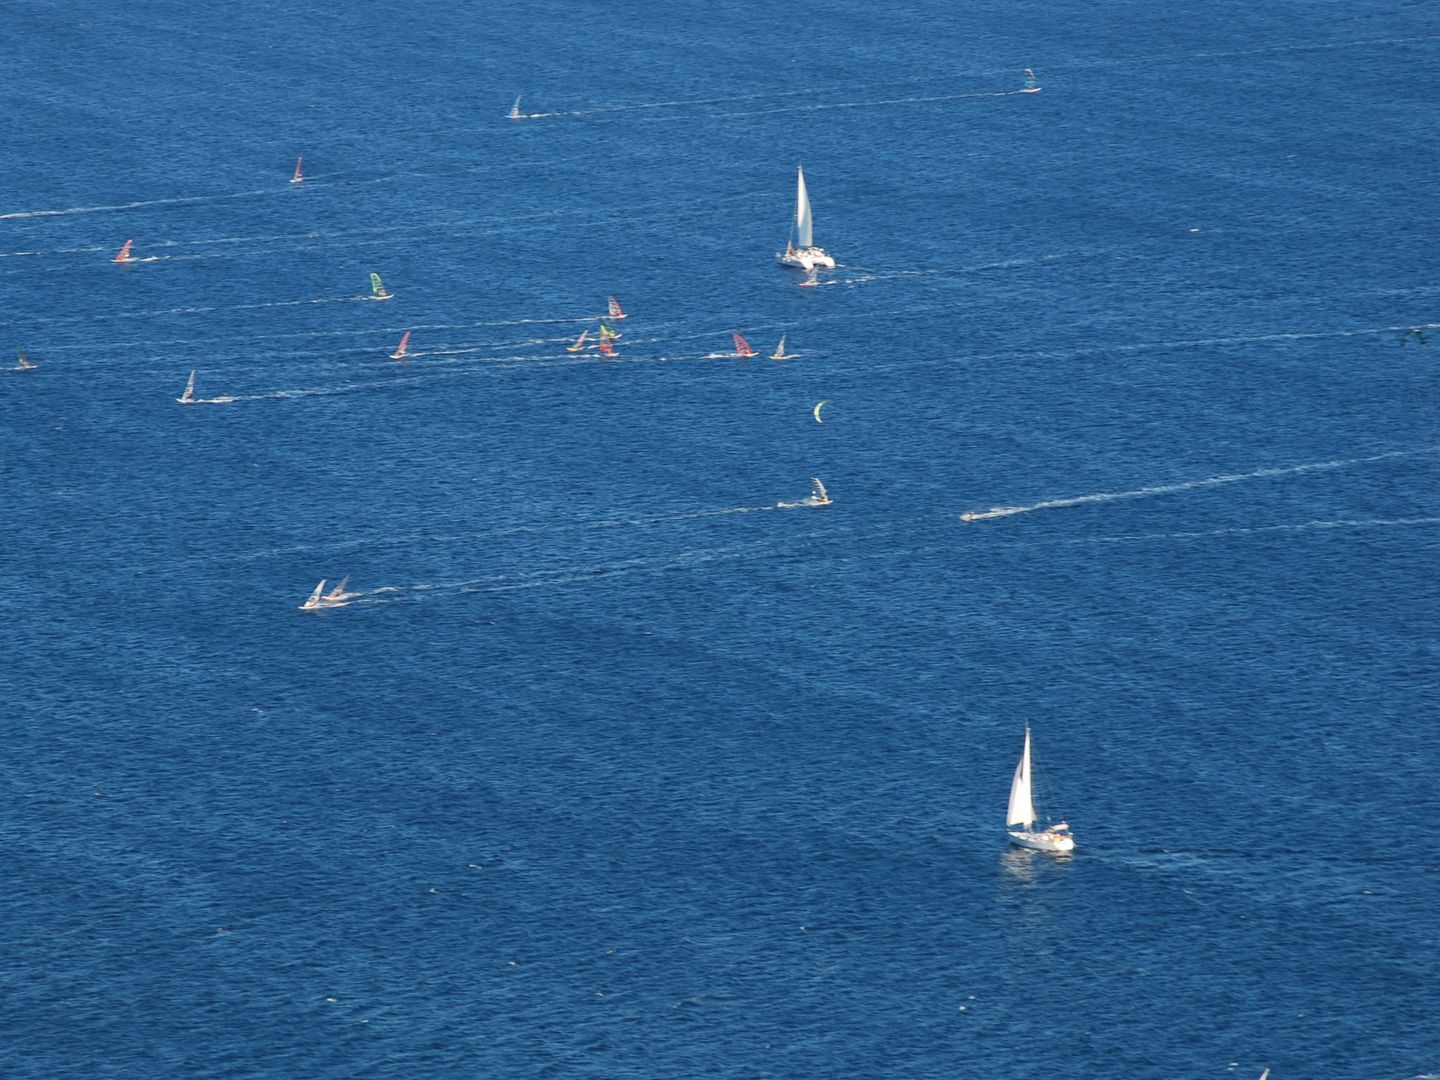 Practicantes de windsurf entre la isla de Korcula y la península de Peljesac.